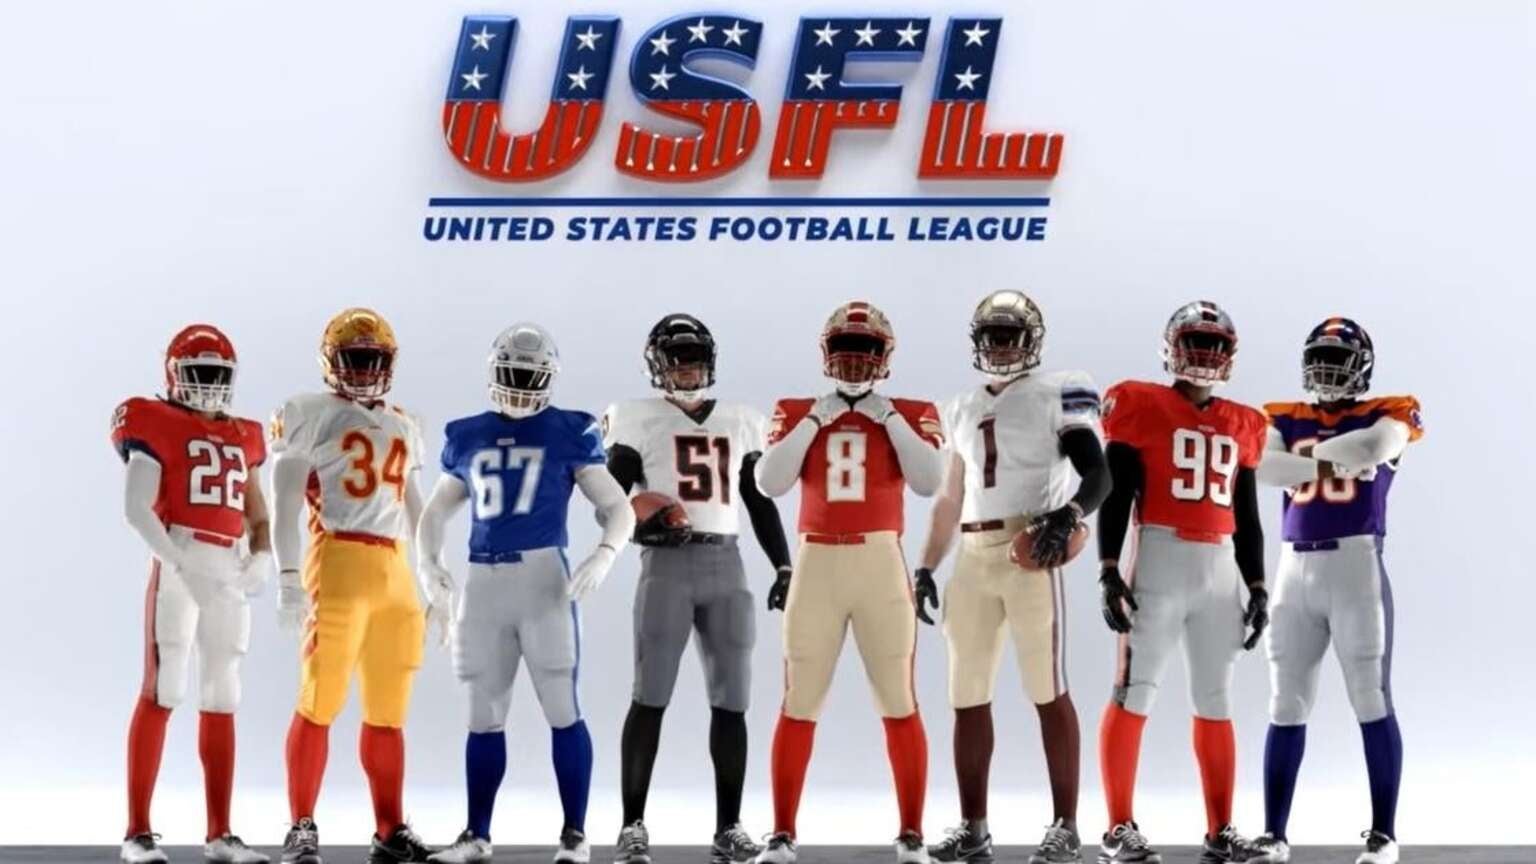 Usfl Teams Reveal Uniforms 2022 Season 1536x864 Crop 